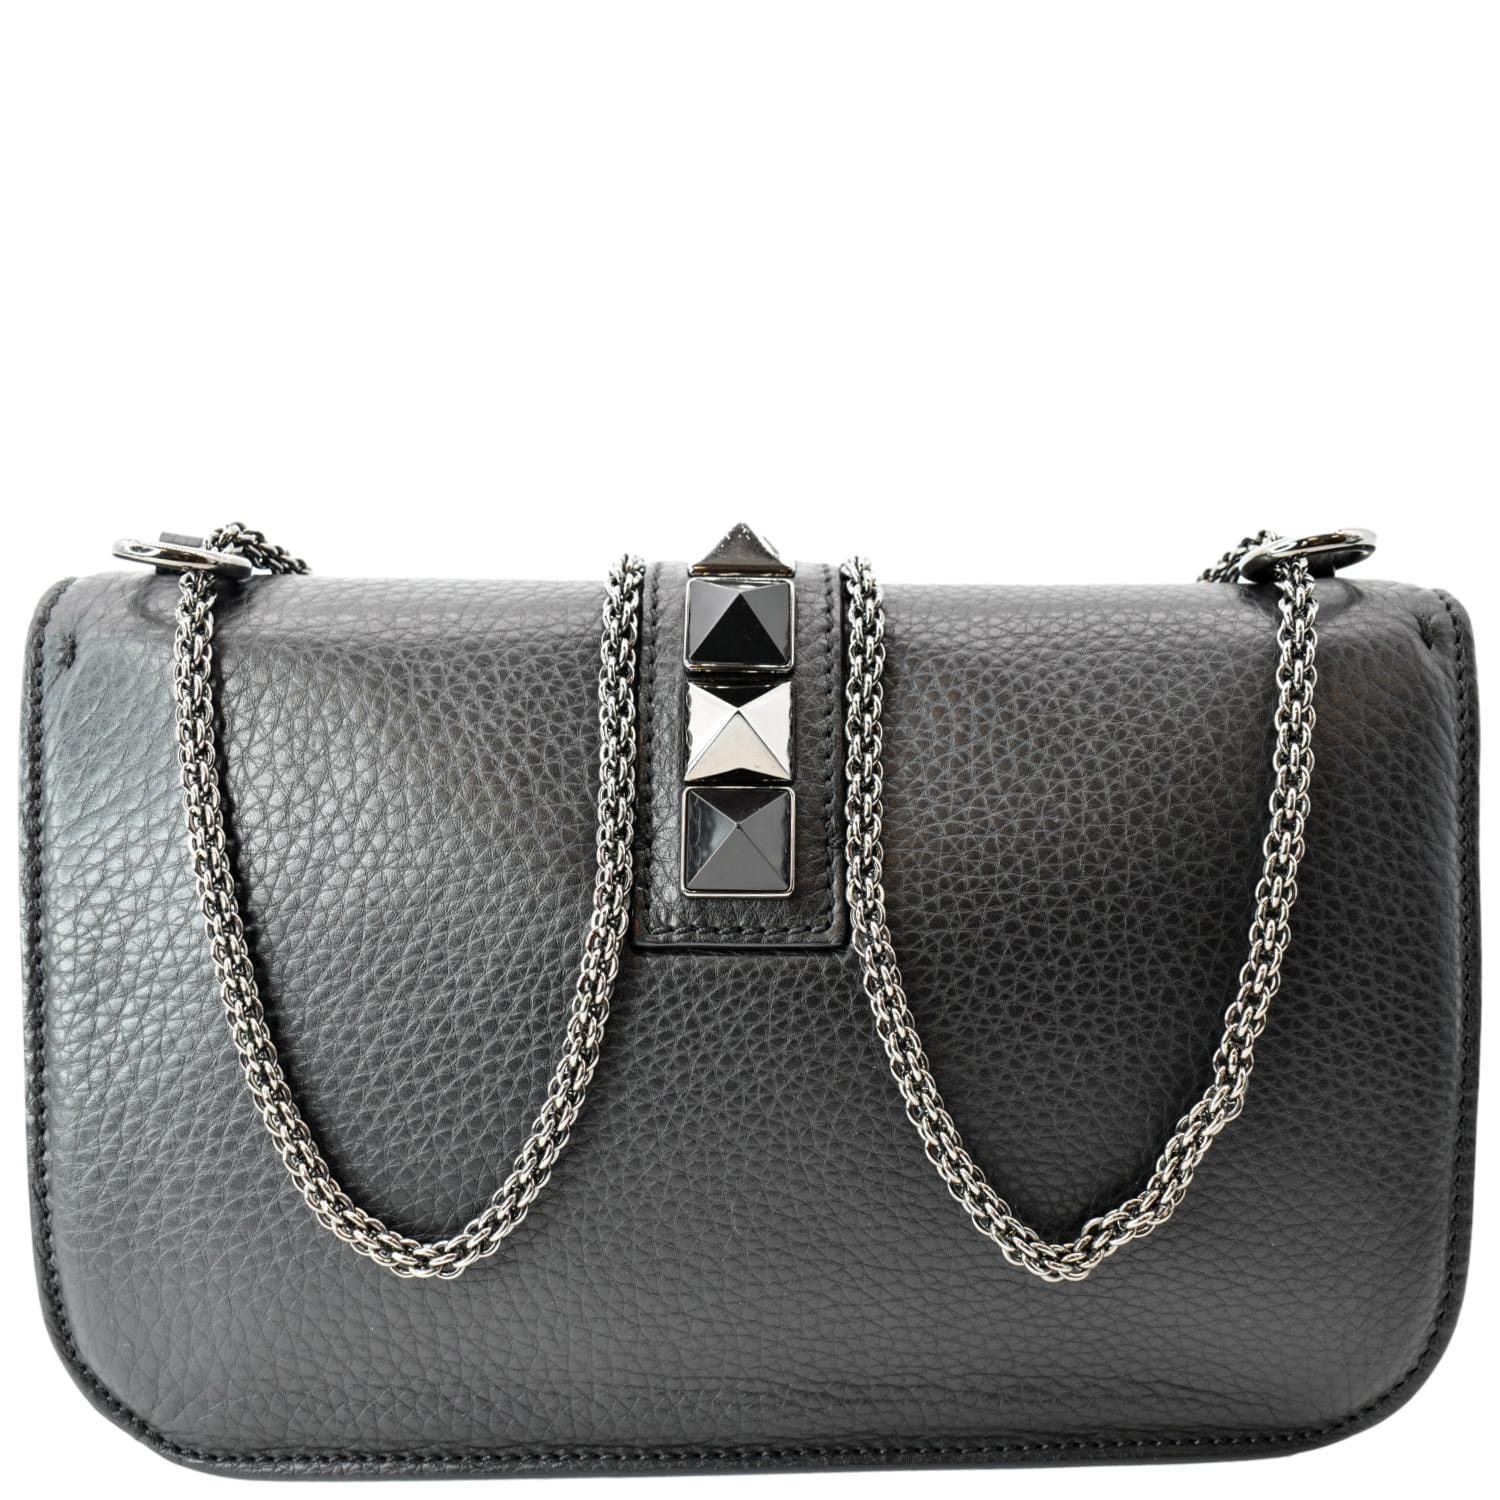 Valentino Old Rose Leather Medium Rockstud Glam Lock Flap Bag